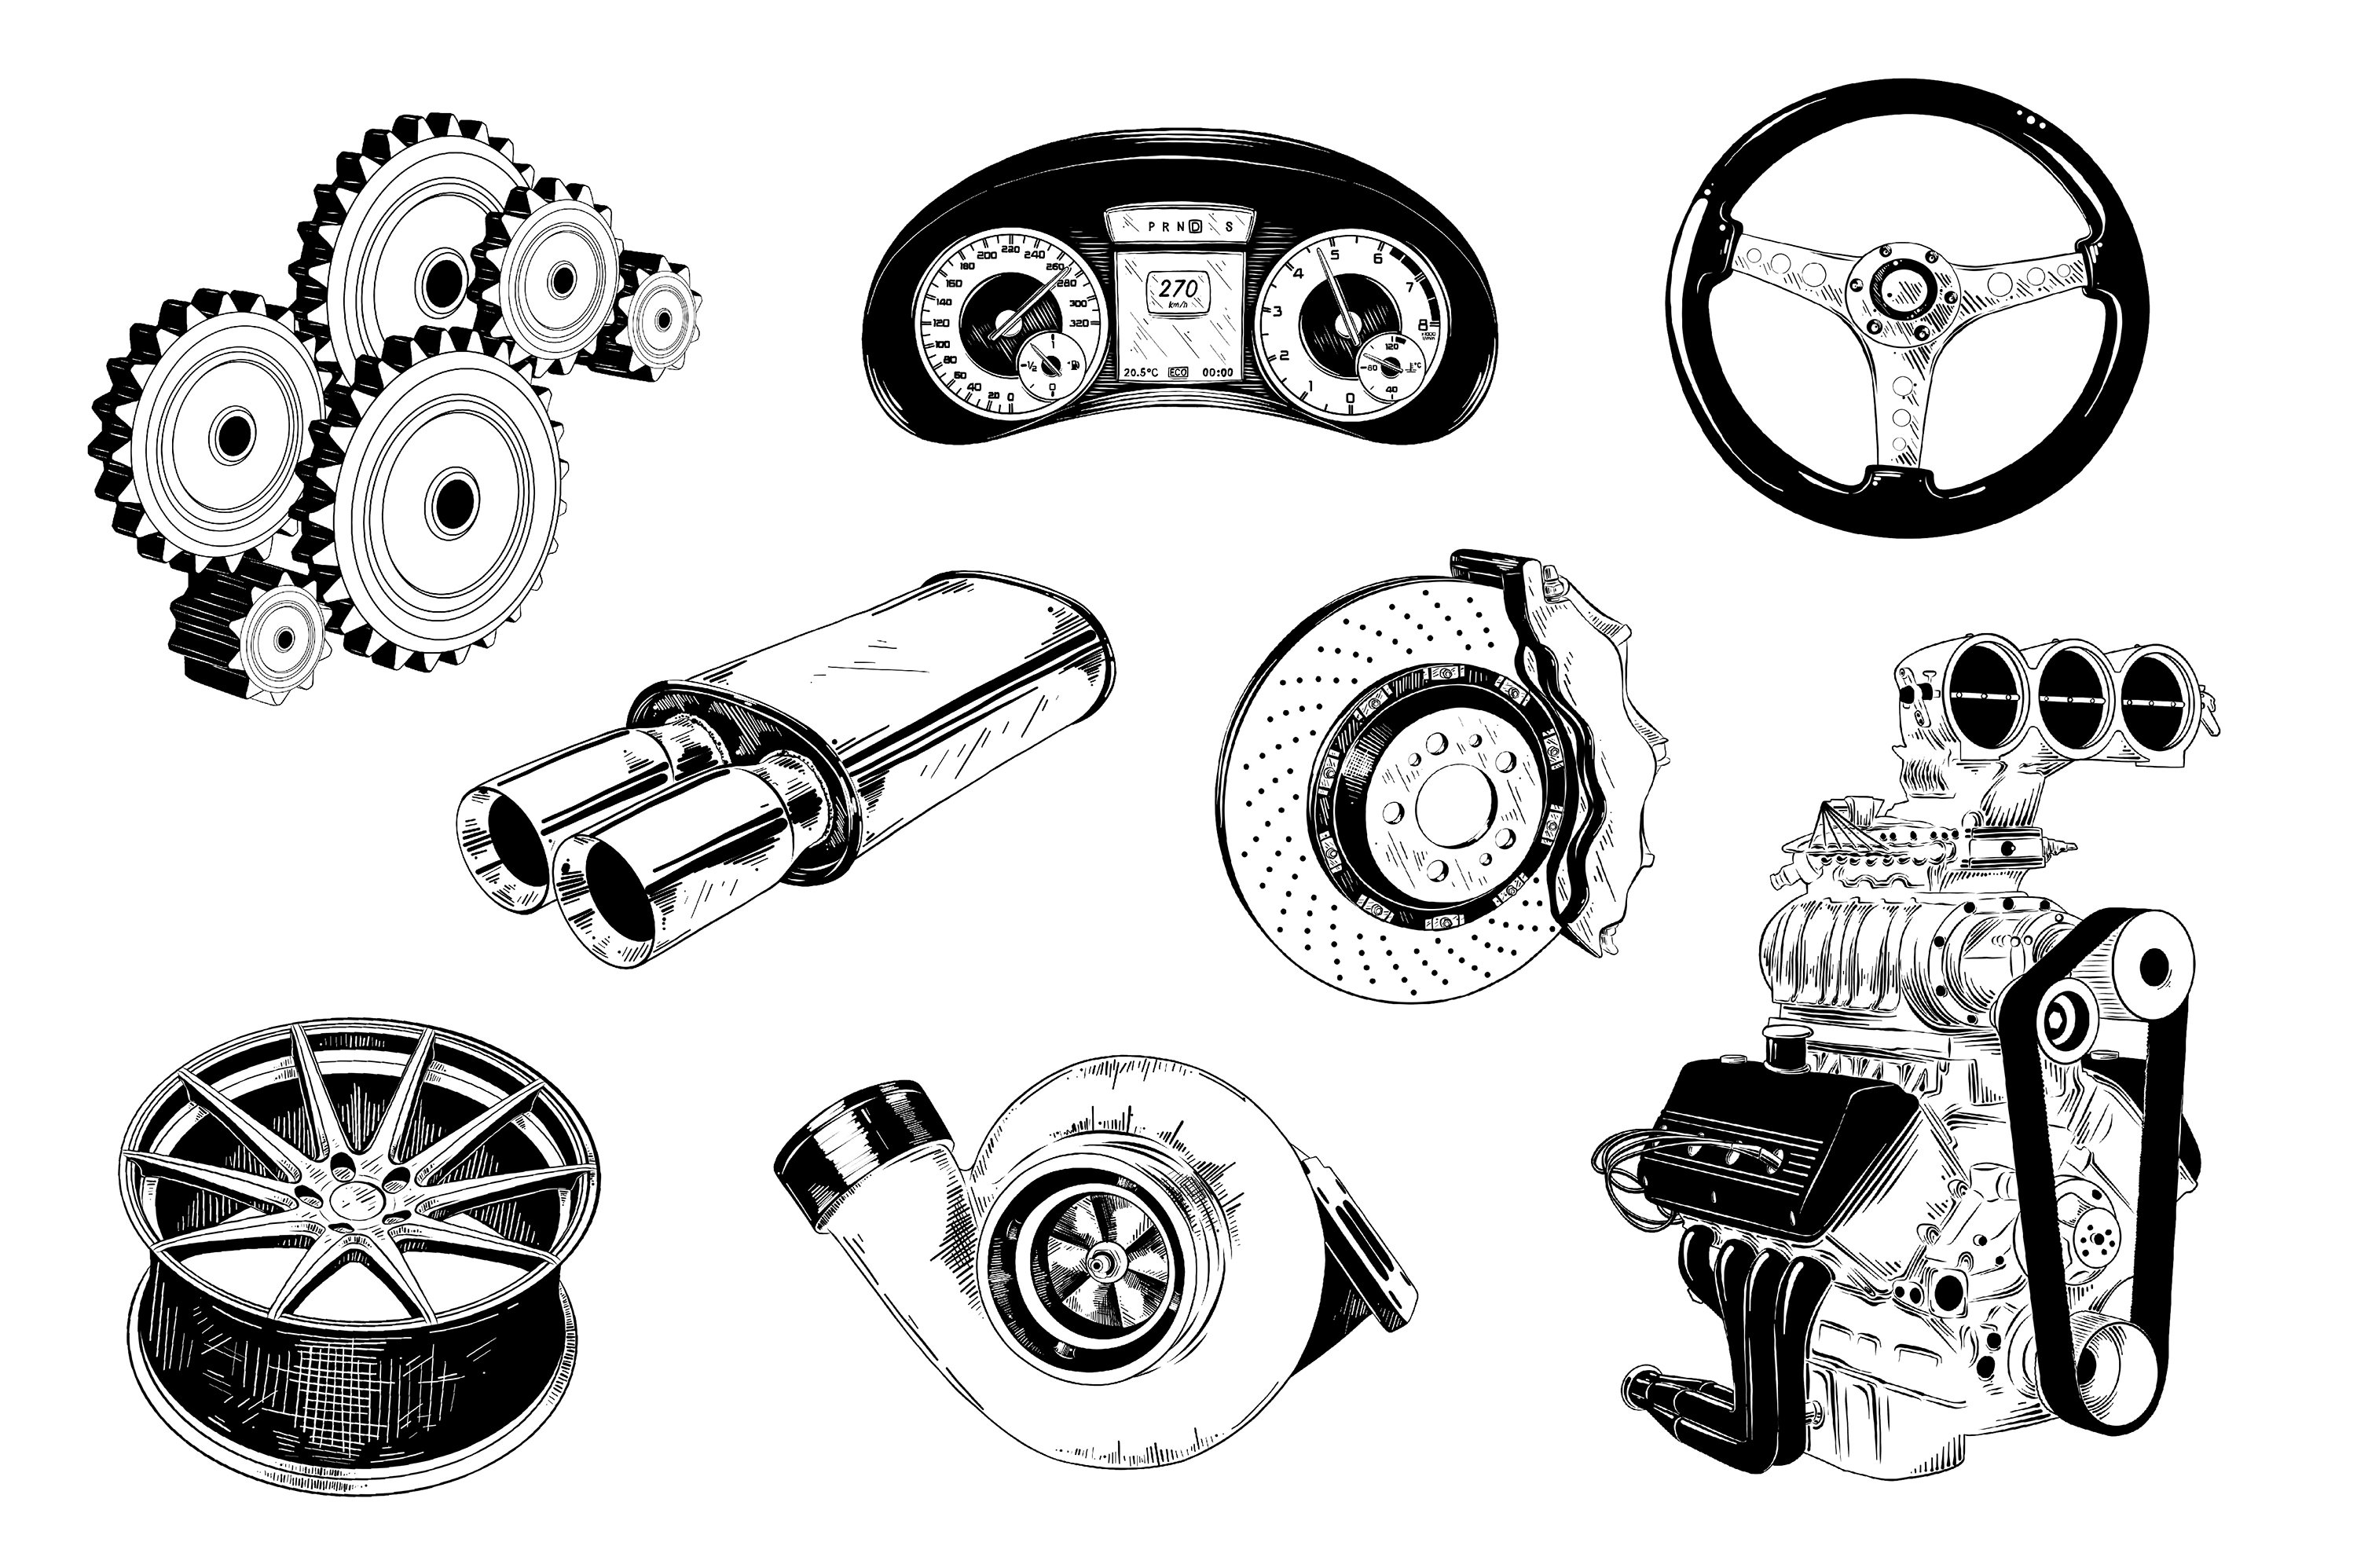 Drawing of various parts of a car.